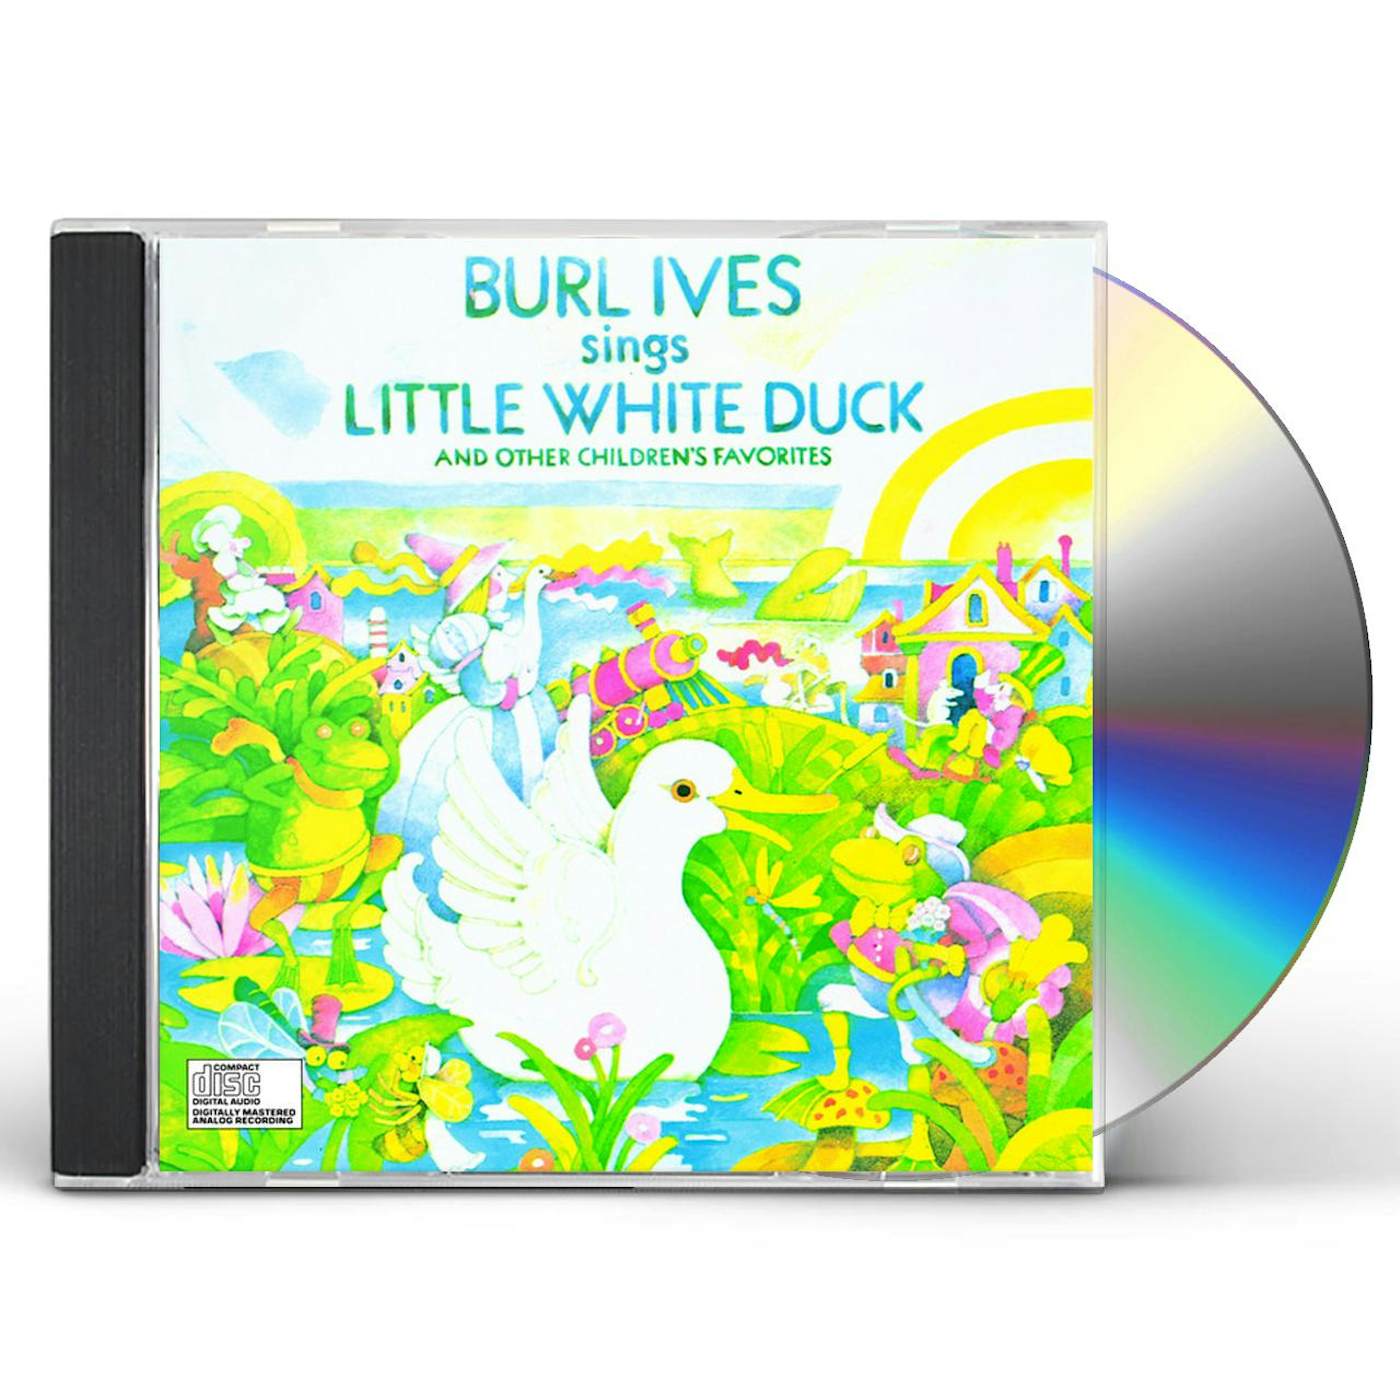 Burl Ives LITTLE WHITE DUCK & OTHER CHILDREN'S FAVORITES CD